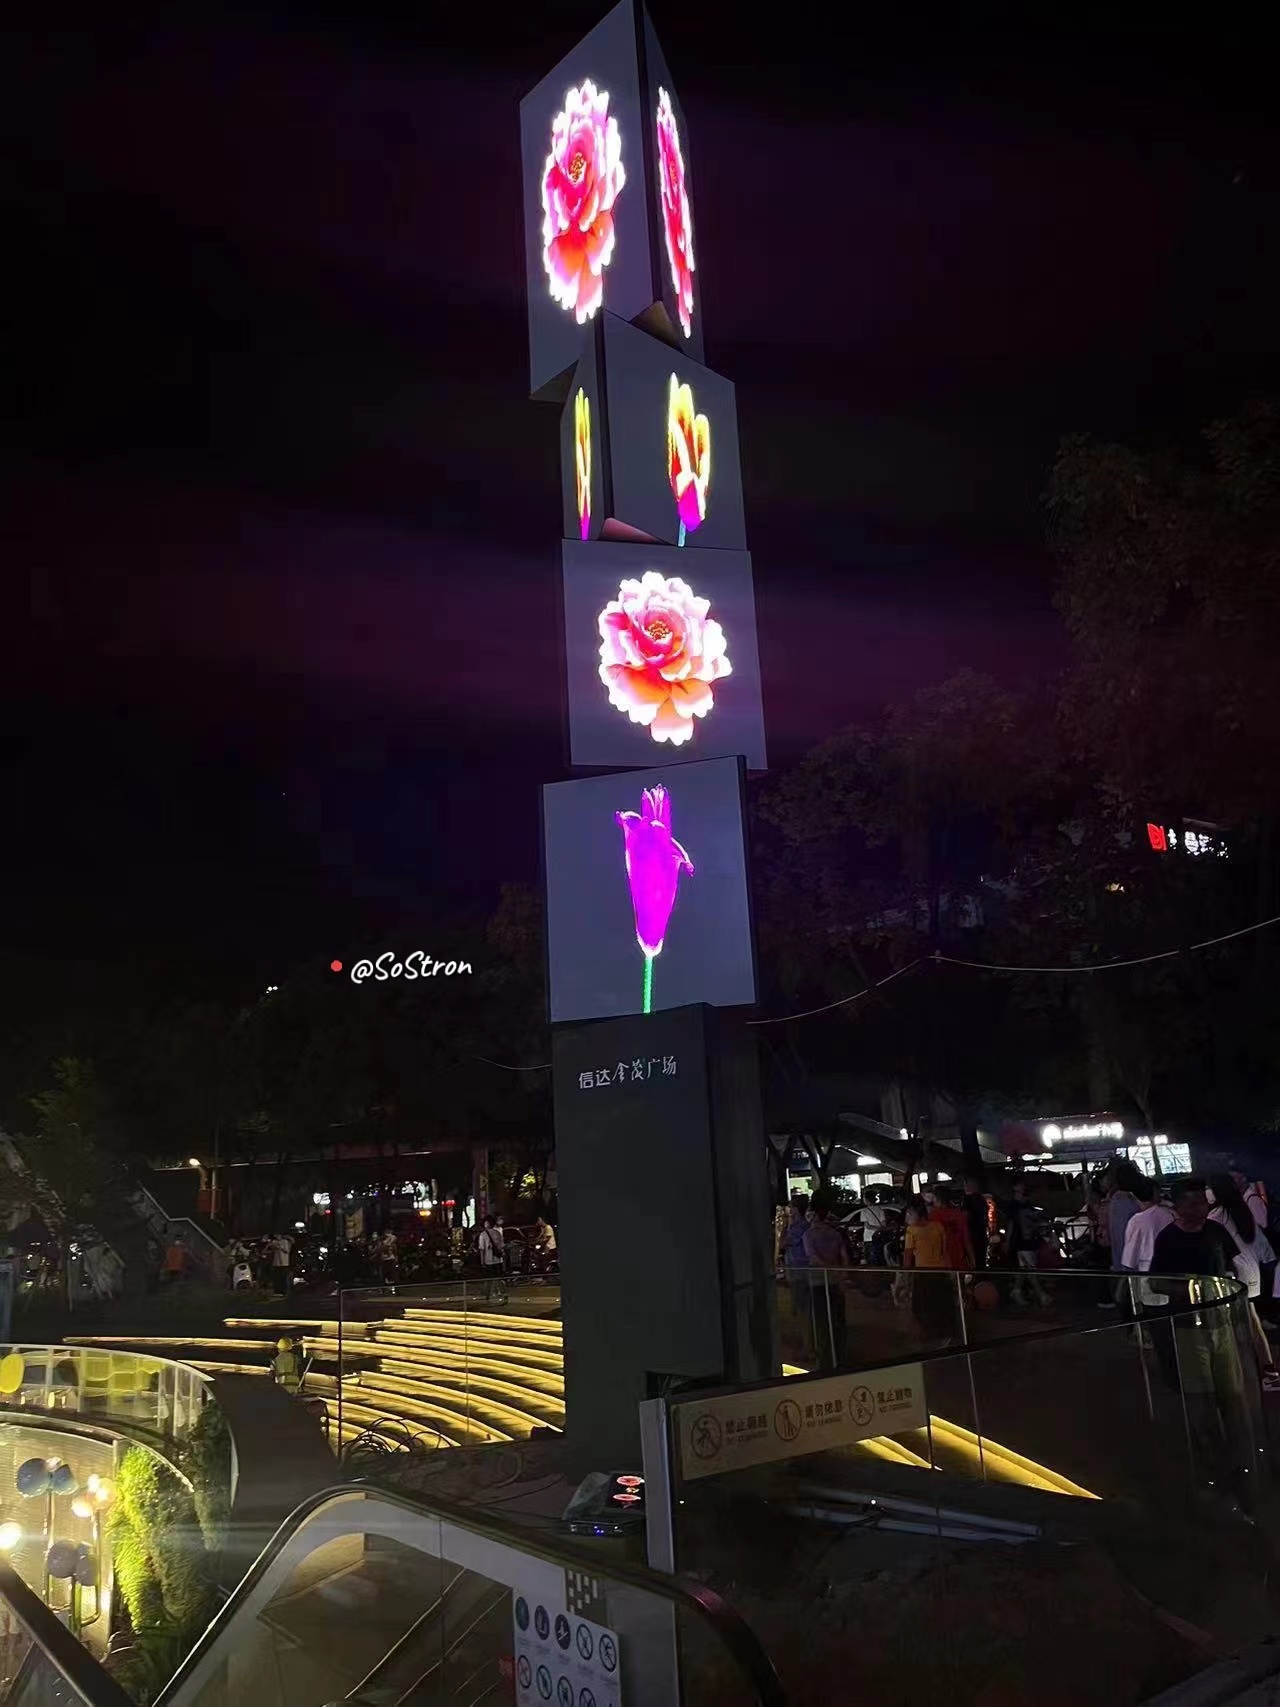 مشروع عرض للضوء في الهواء الطلق في ساحة غيمو في قوانغتشو